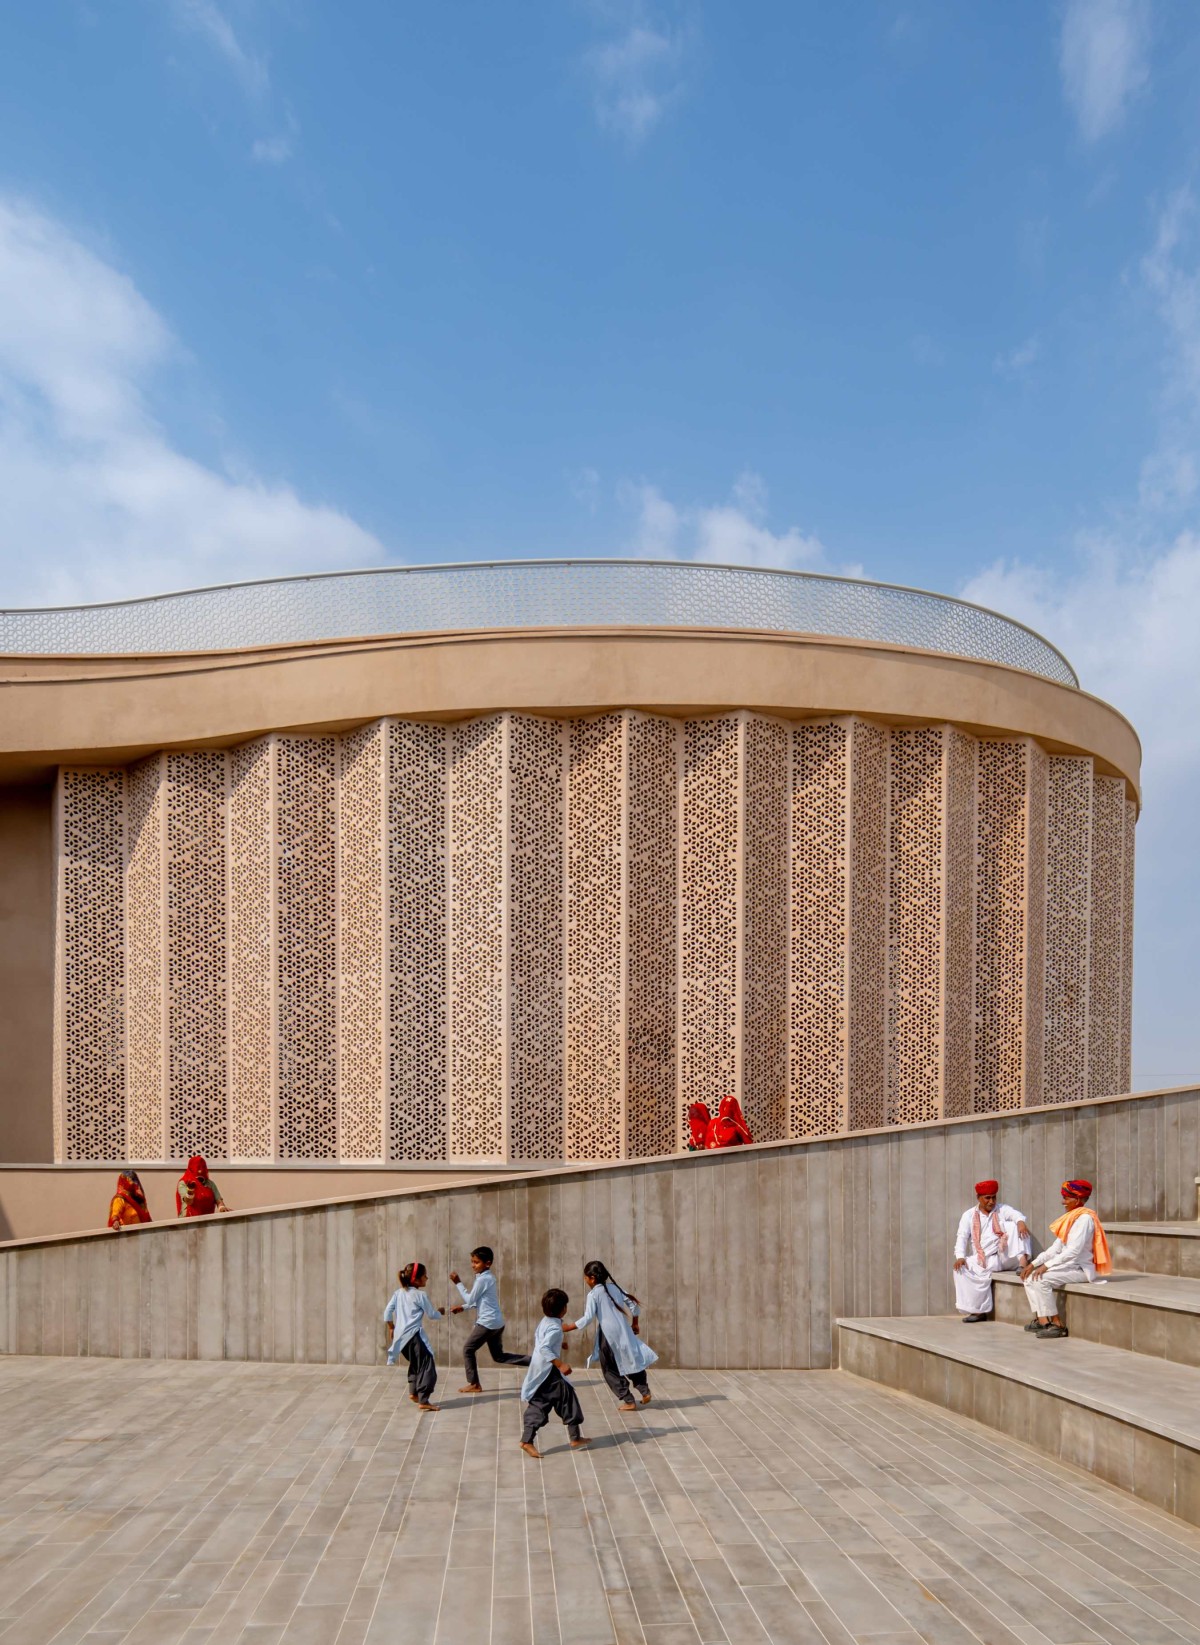 Amphitheater of Nokha Village Community Centre by Sanjay Puri Architects